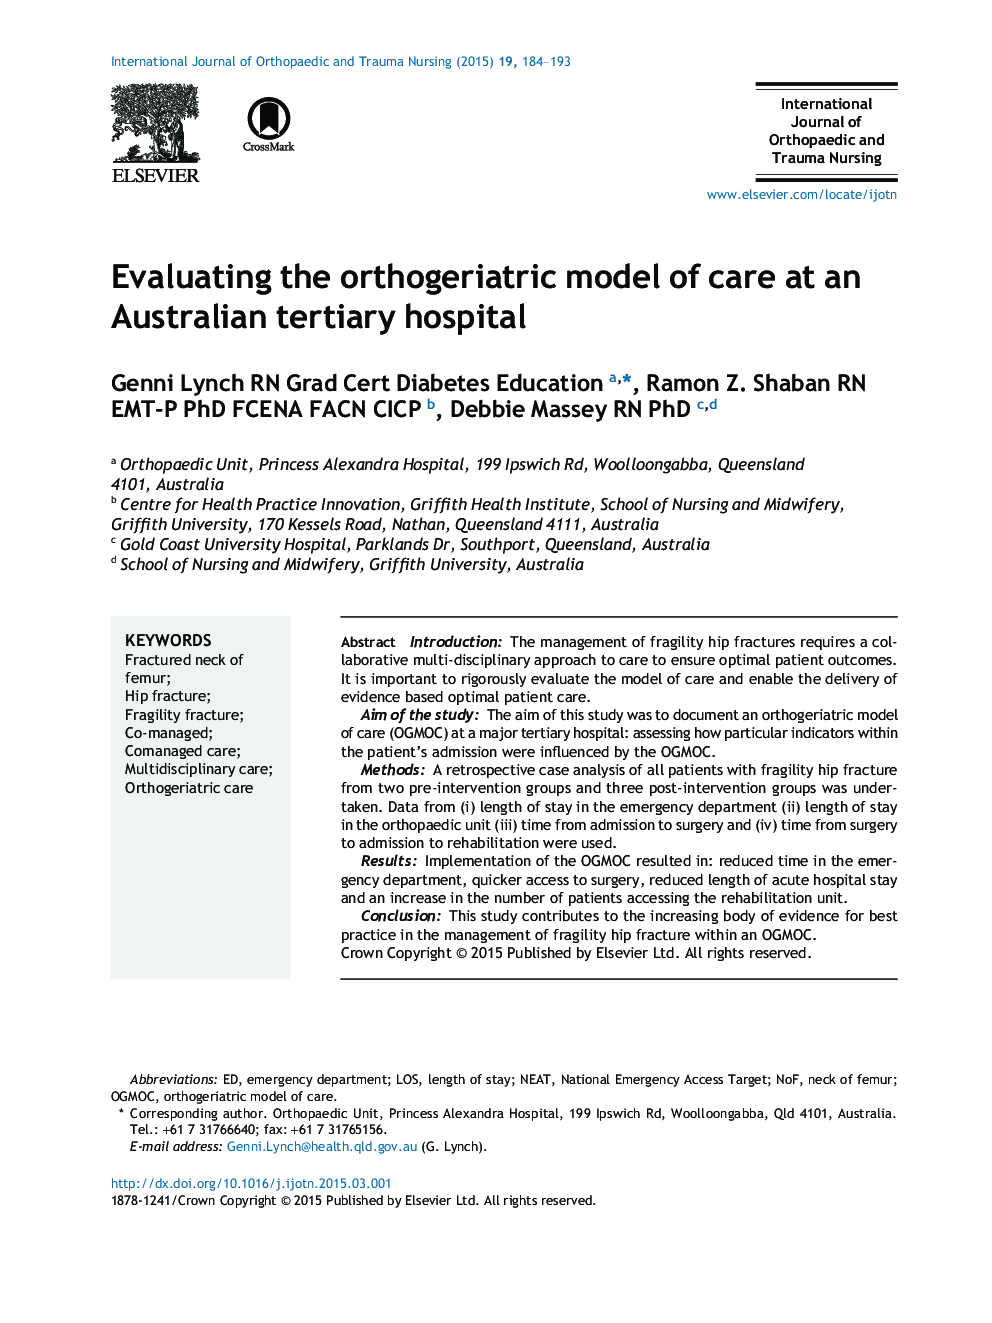 ارزیابی مدل ارتوپدی از مراقبت در یک بیمارستان عالی استرالیا